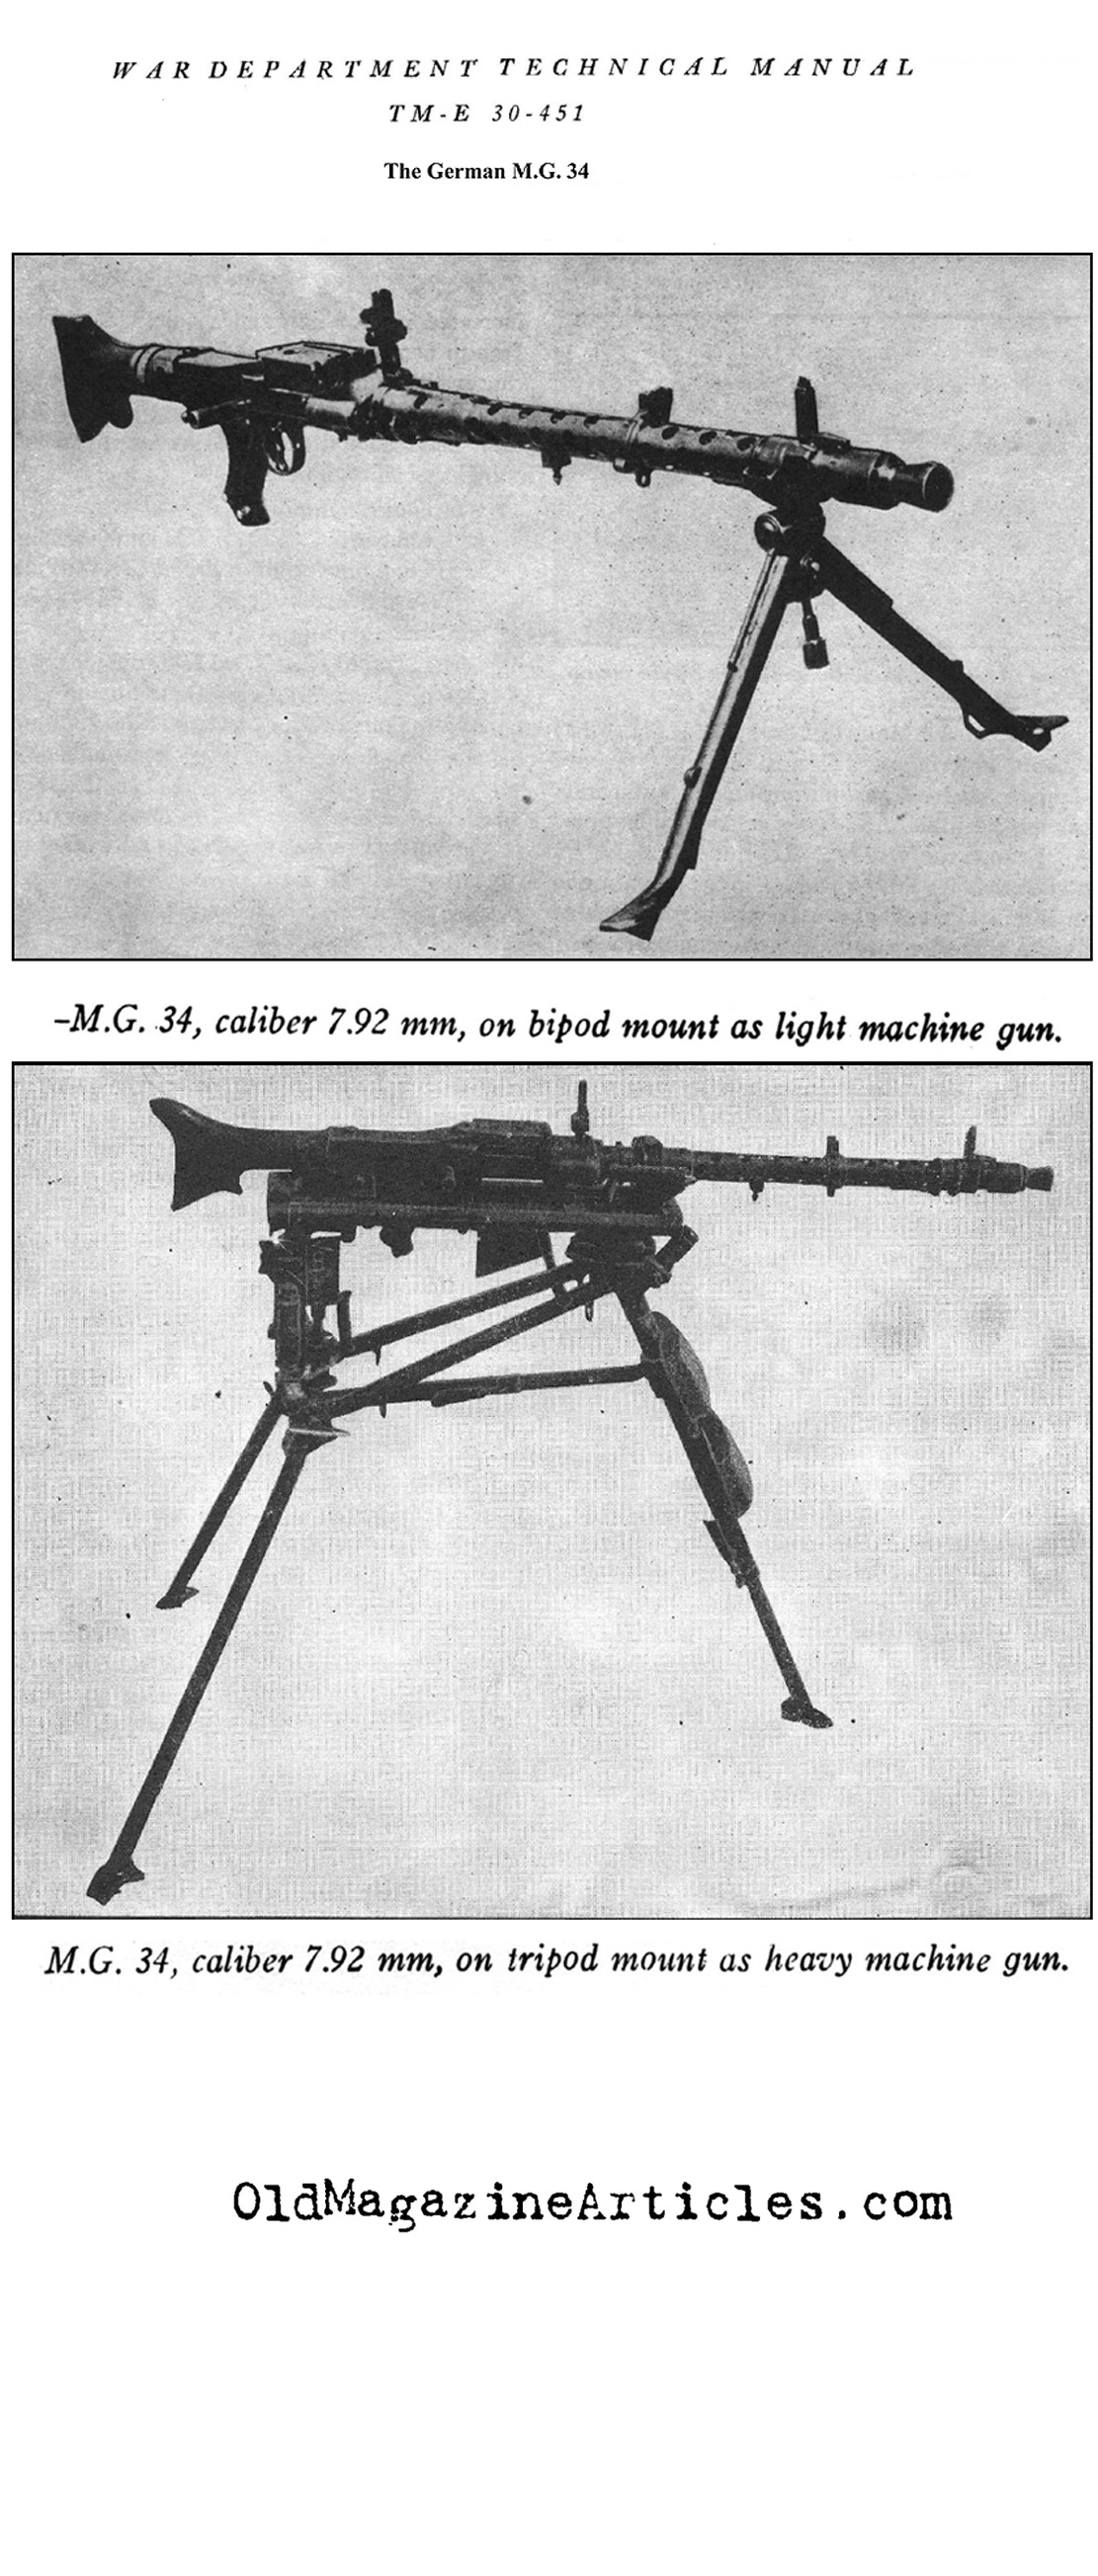 The German M.G. 34 (U.S. Dept. of War, 1945)